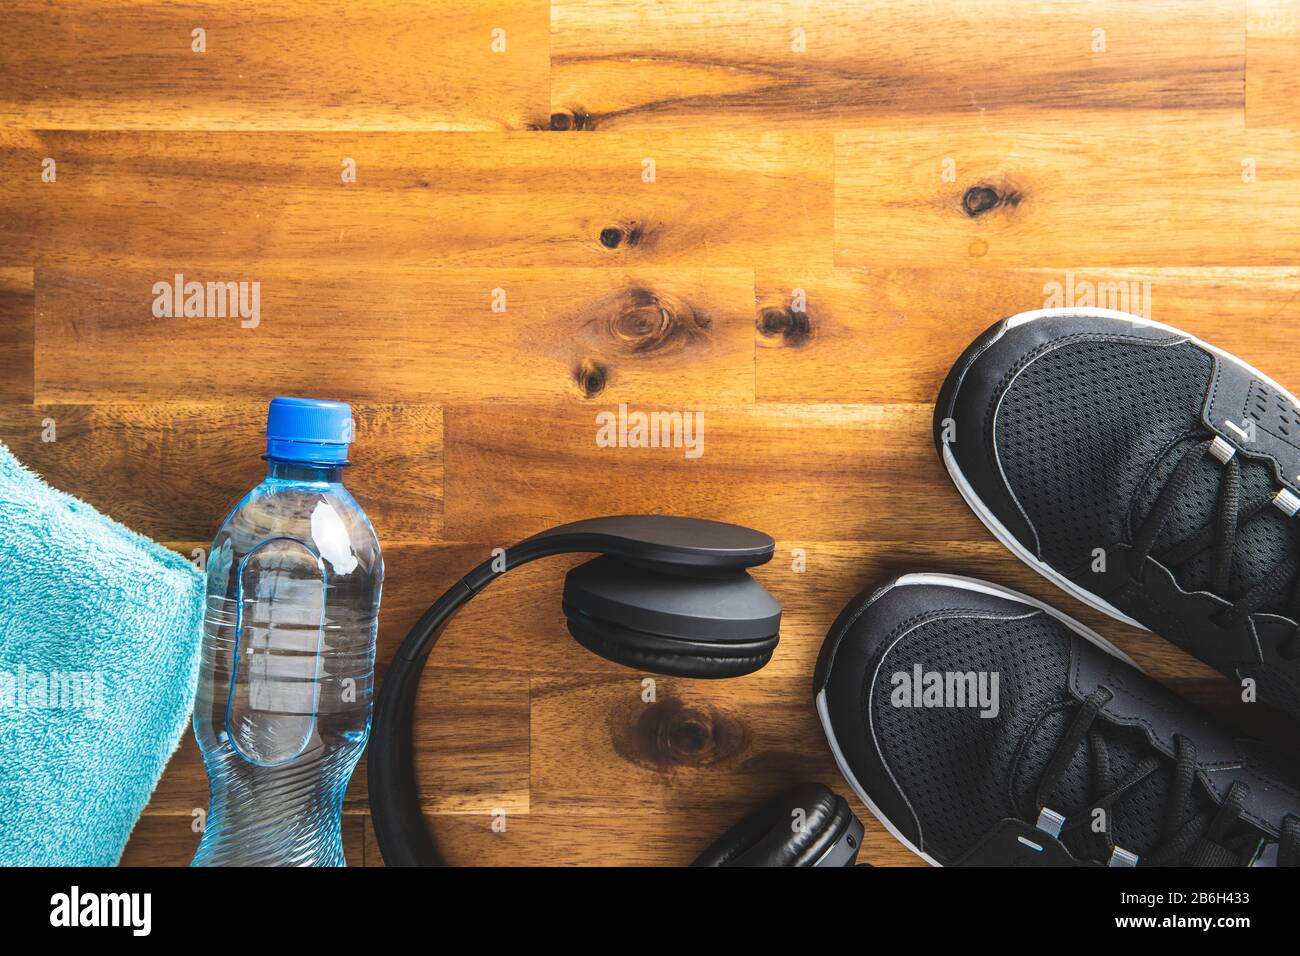 Concept de forme physique. Chaussures de sport noires, écouteurs, haltère et bouteille d'eau sur parquet. Vue de dessus. Banque D'Images